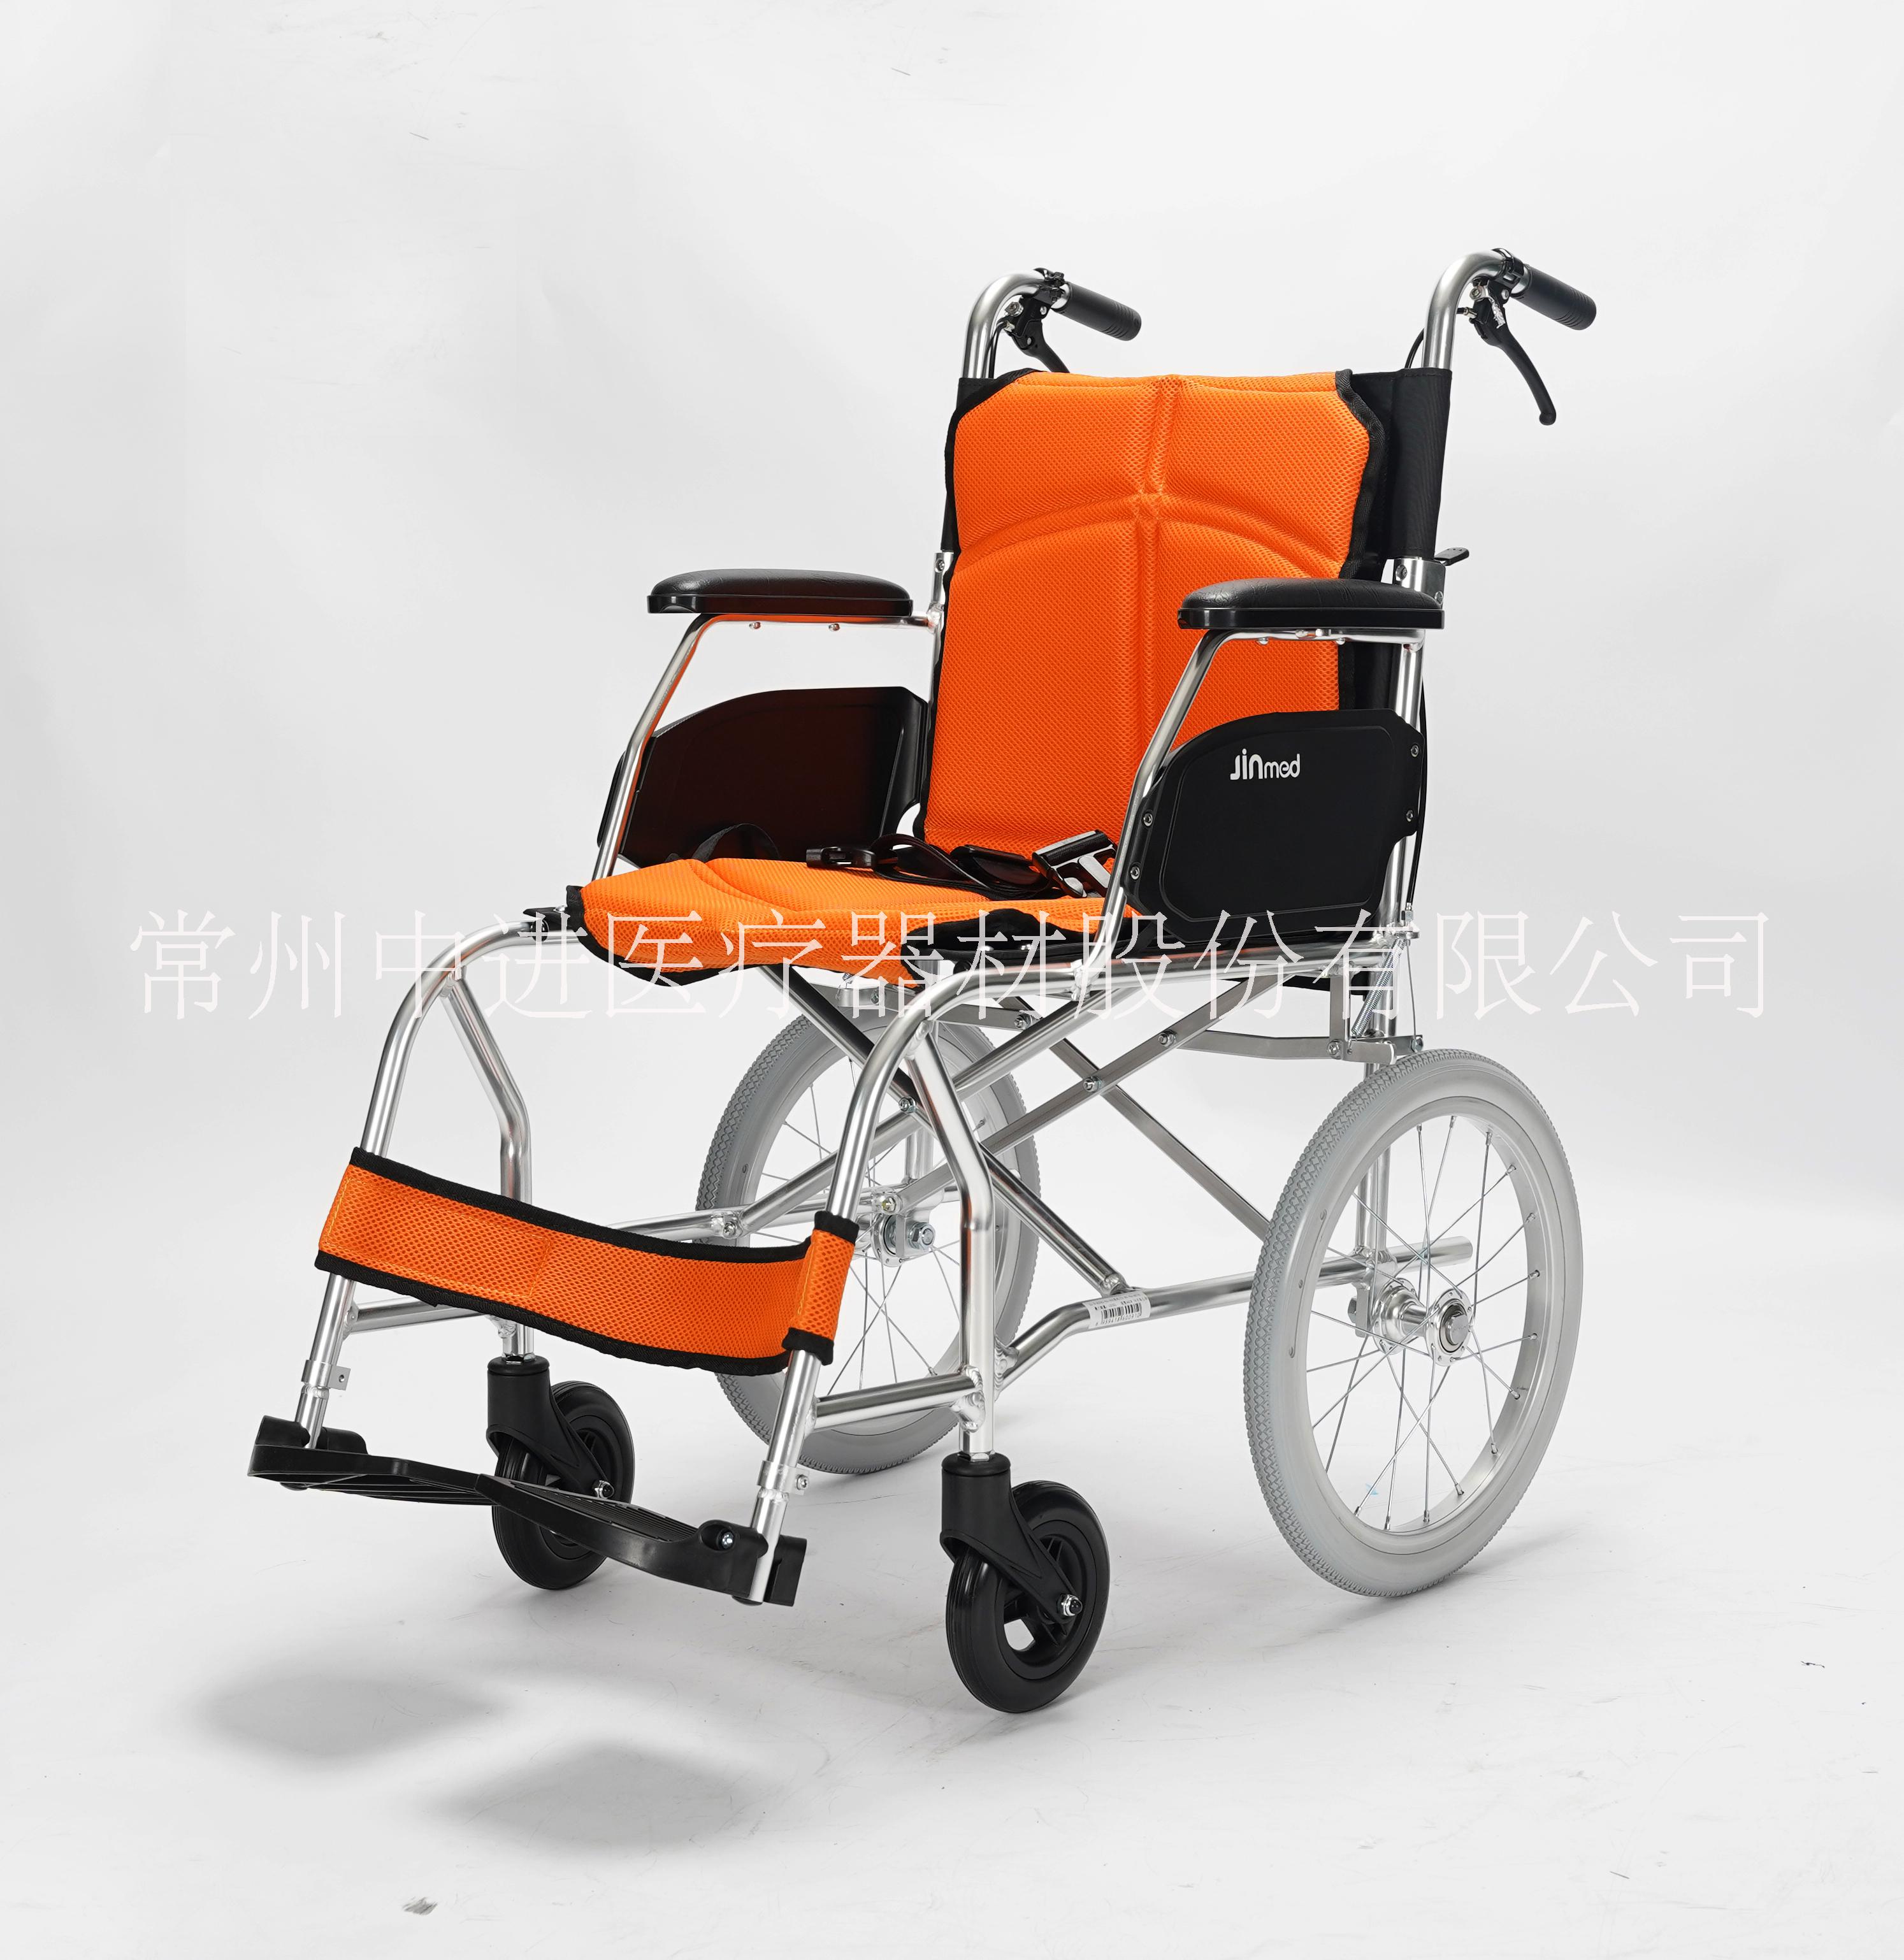 常州市中进航钛铝合金轮椅车老年人助行轮椅车残疾人轮椅厂家中进航钛铝合金轮椅车老年人助行轮椅车残疾人轮椅出口日本轮椅超轻便多功能轮椅定制